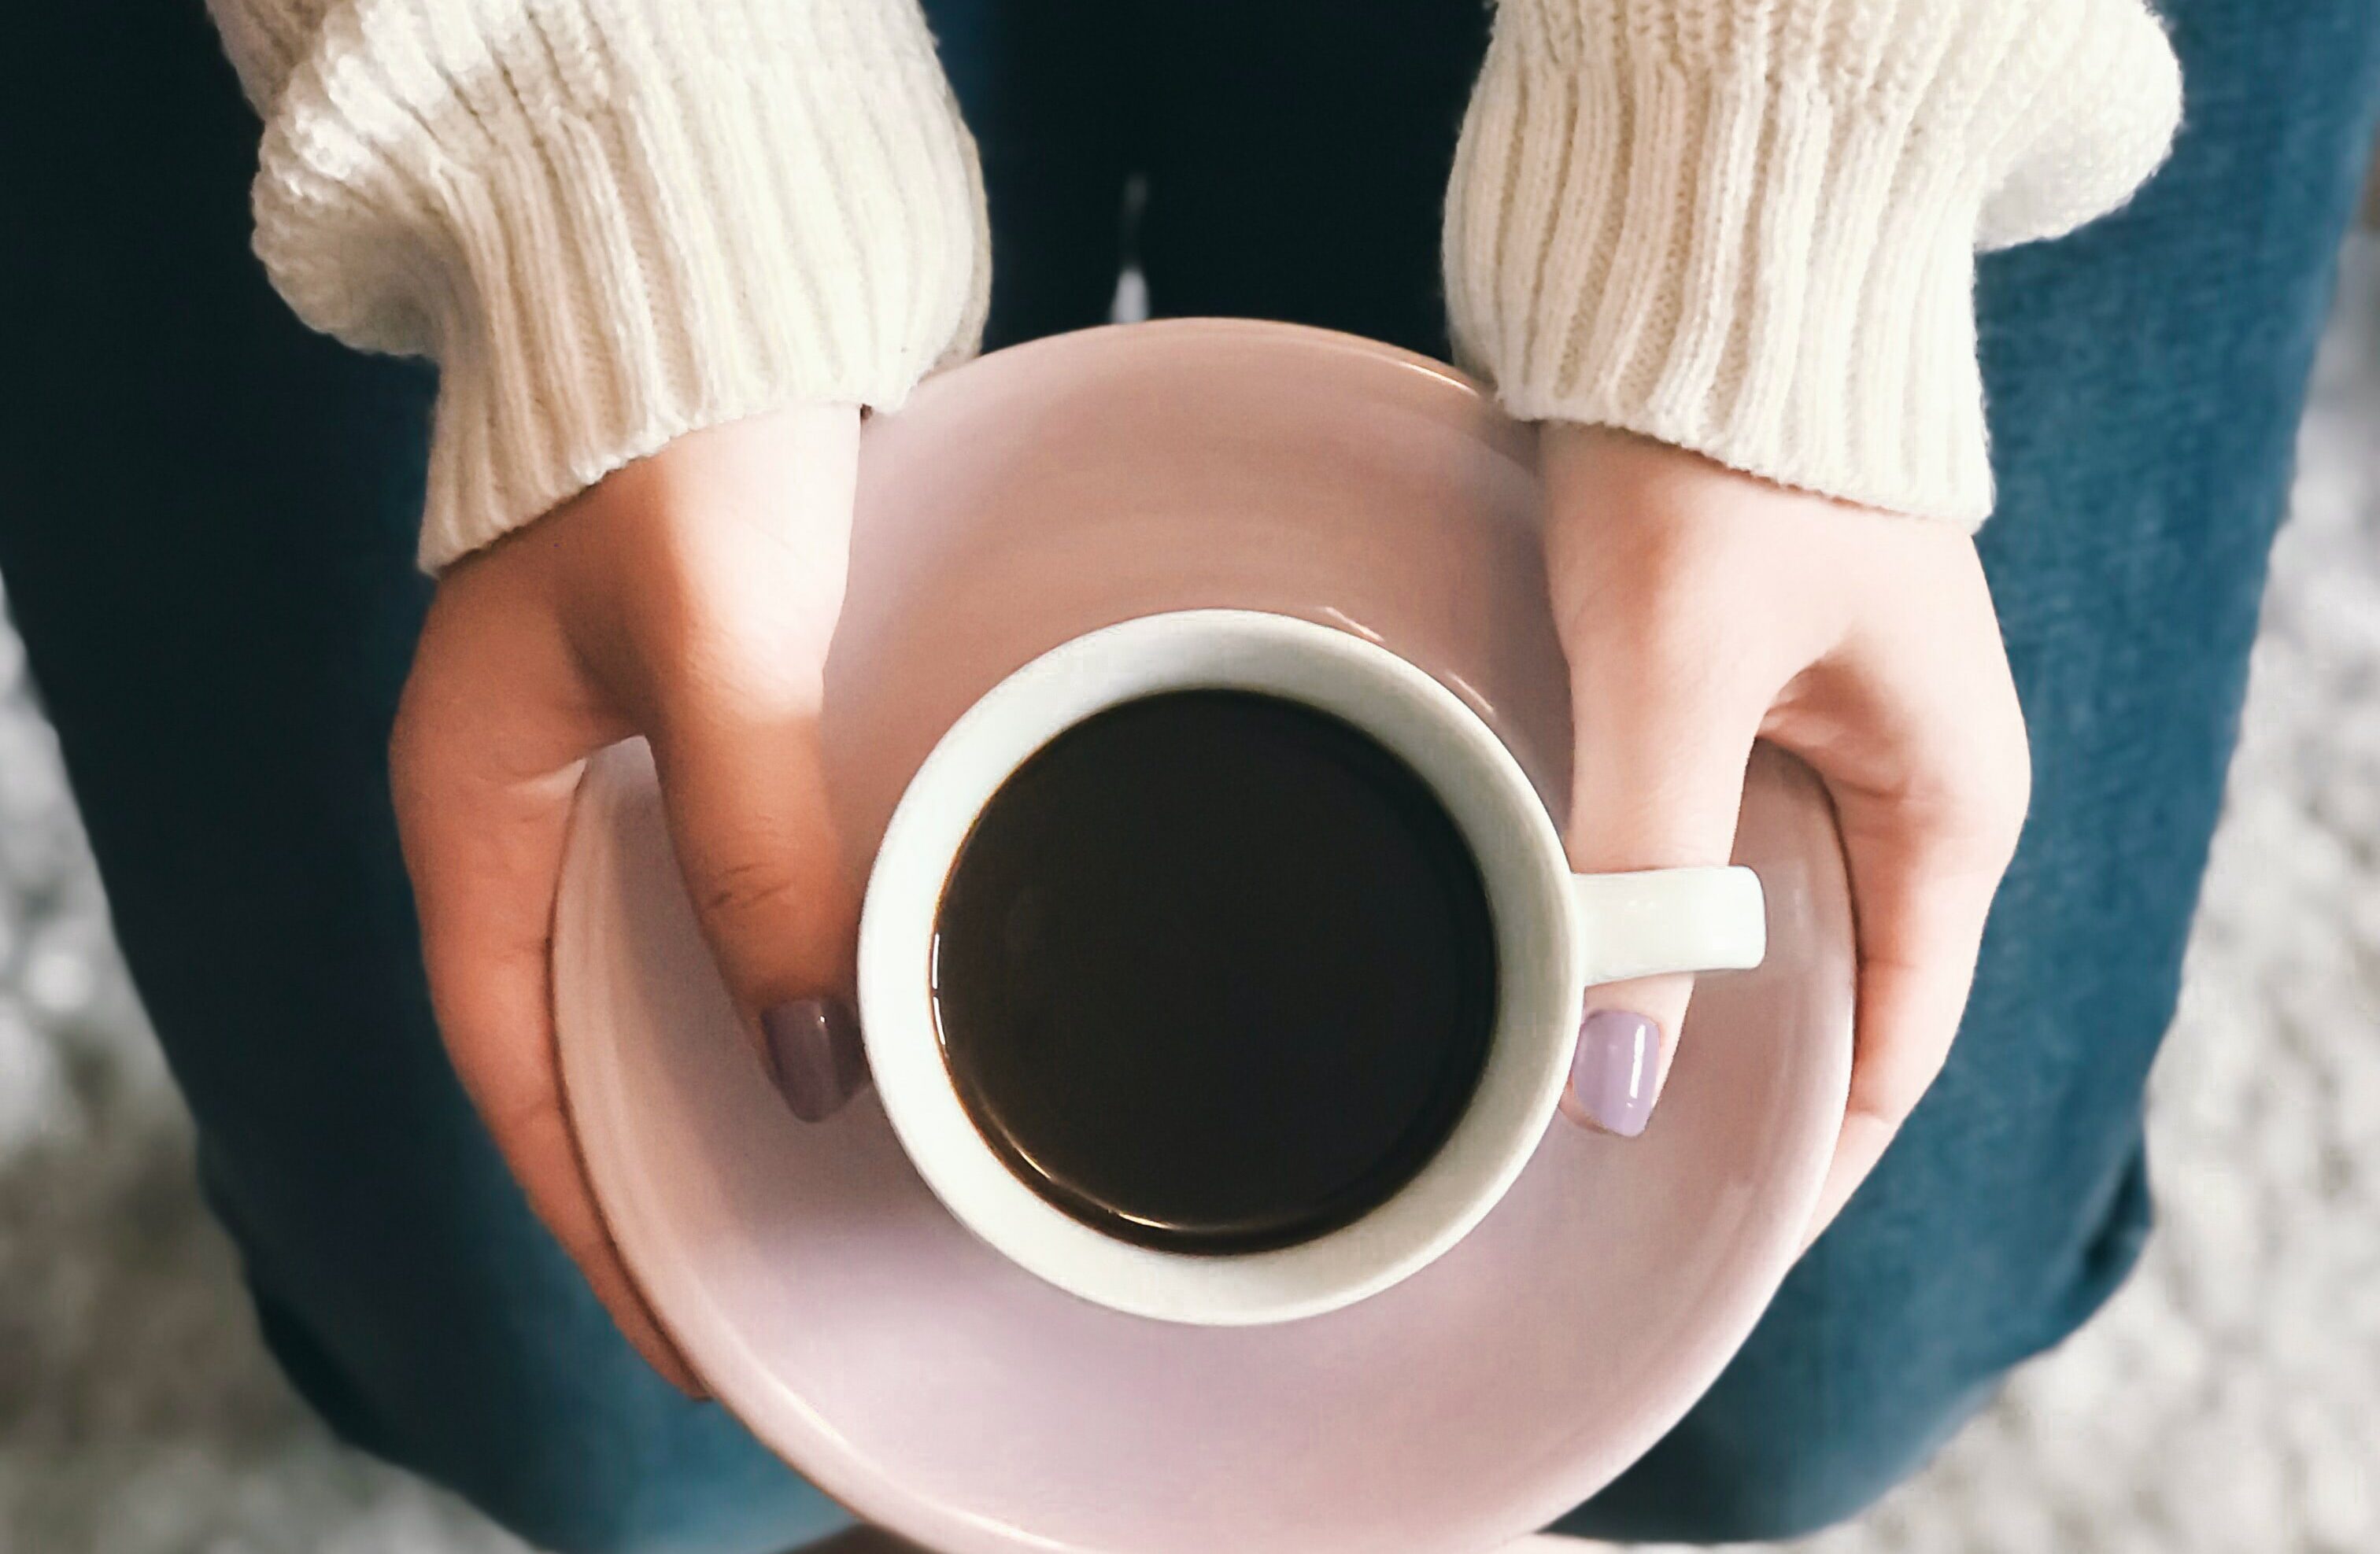 Munching Tablet Beweegt niet Feit of fabel over koffie? 's Morgens koffie drinken droogt je lichaam uit